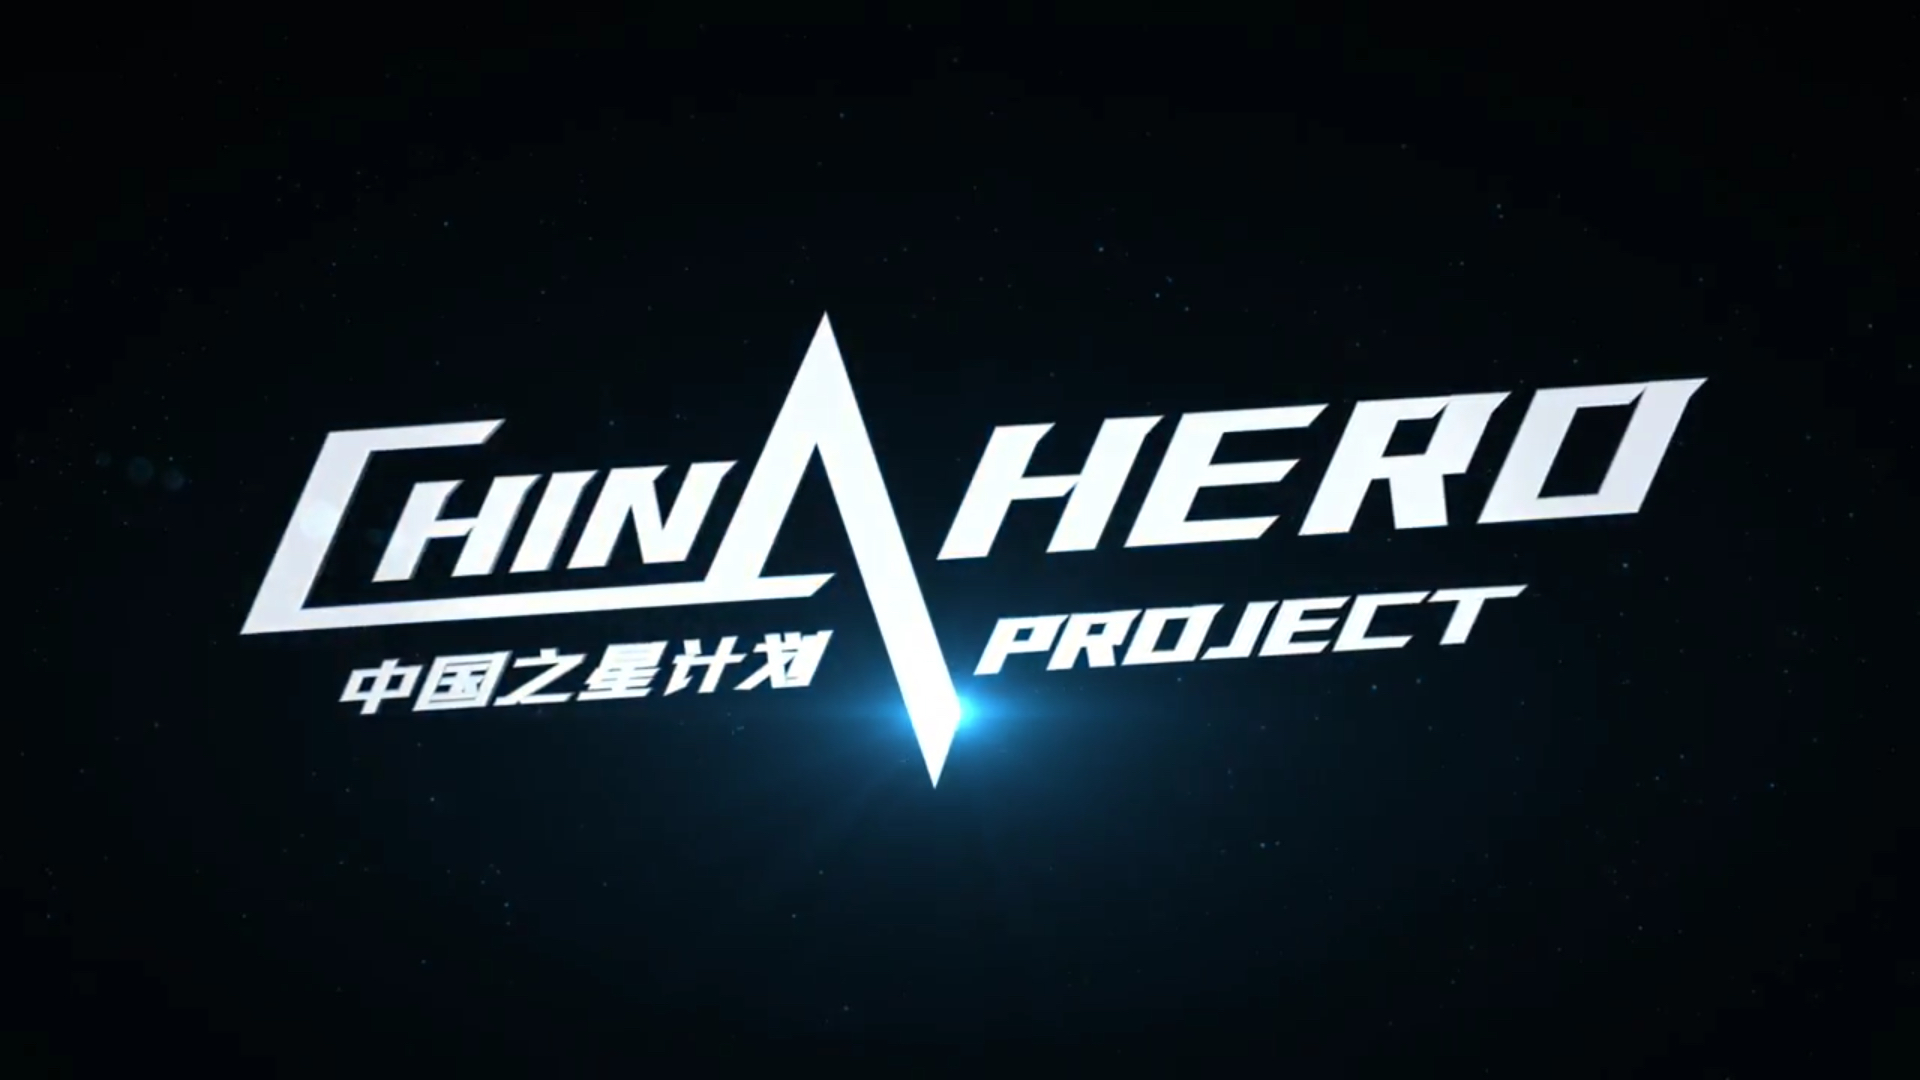 sony china hero project